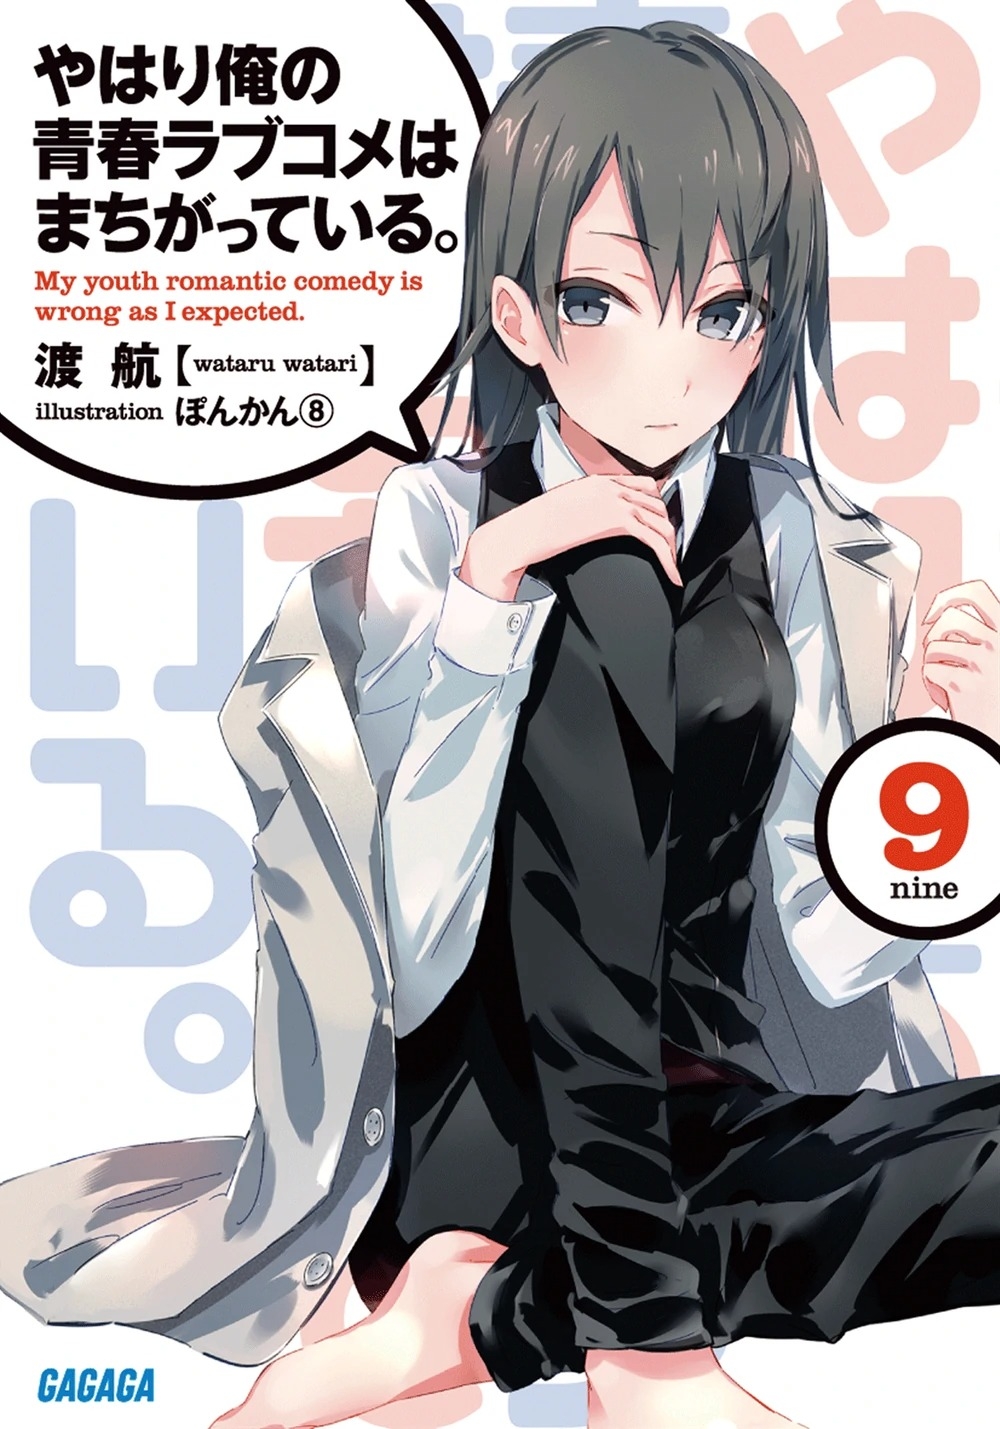 [light novel] yahari ore no seishun love come wa machigatteiru illust compliation 114